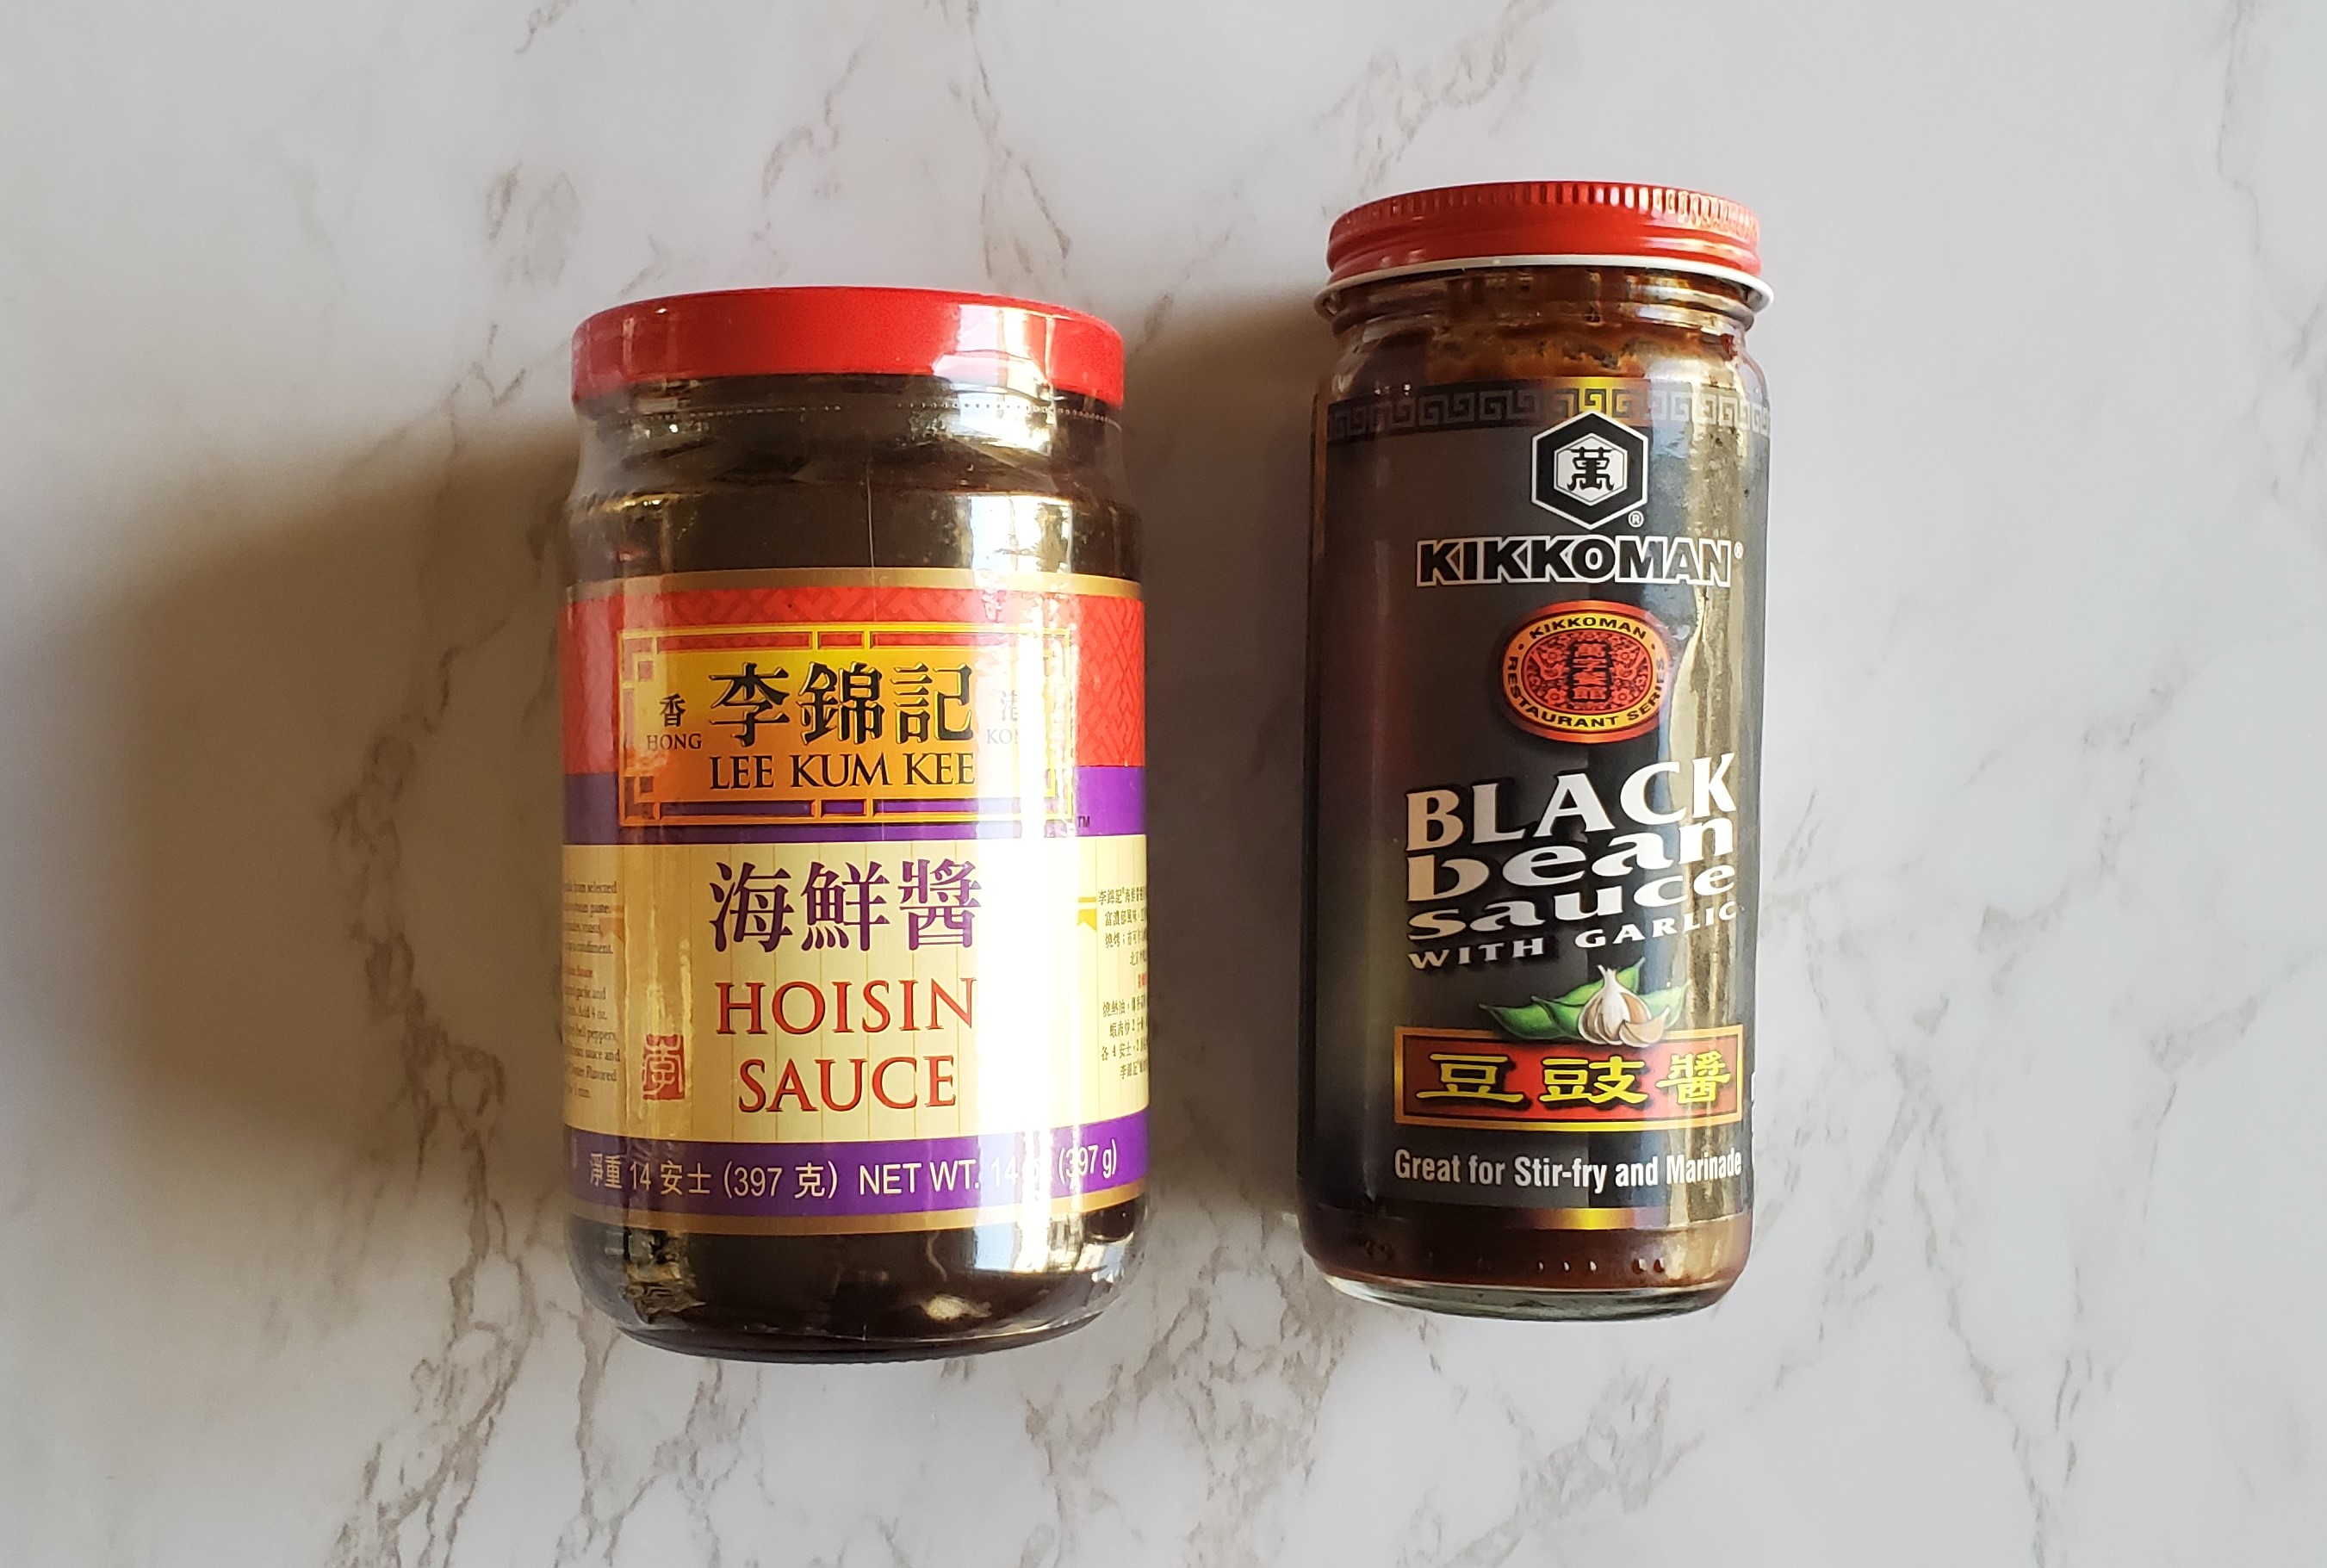 Lee Kum Kee Hoisin Sauce and Kikkoman Black Bean with Garlic Sauce.